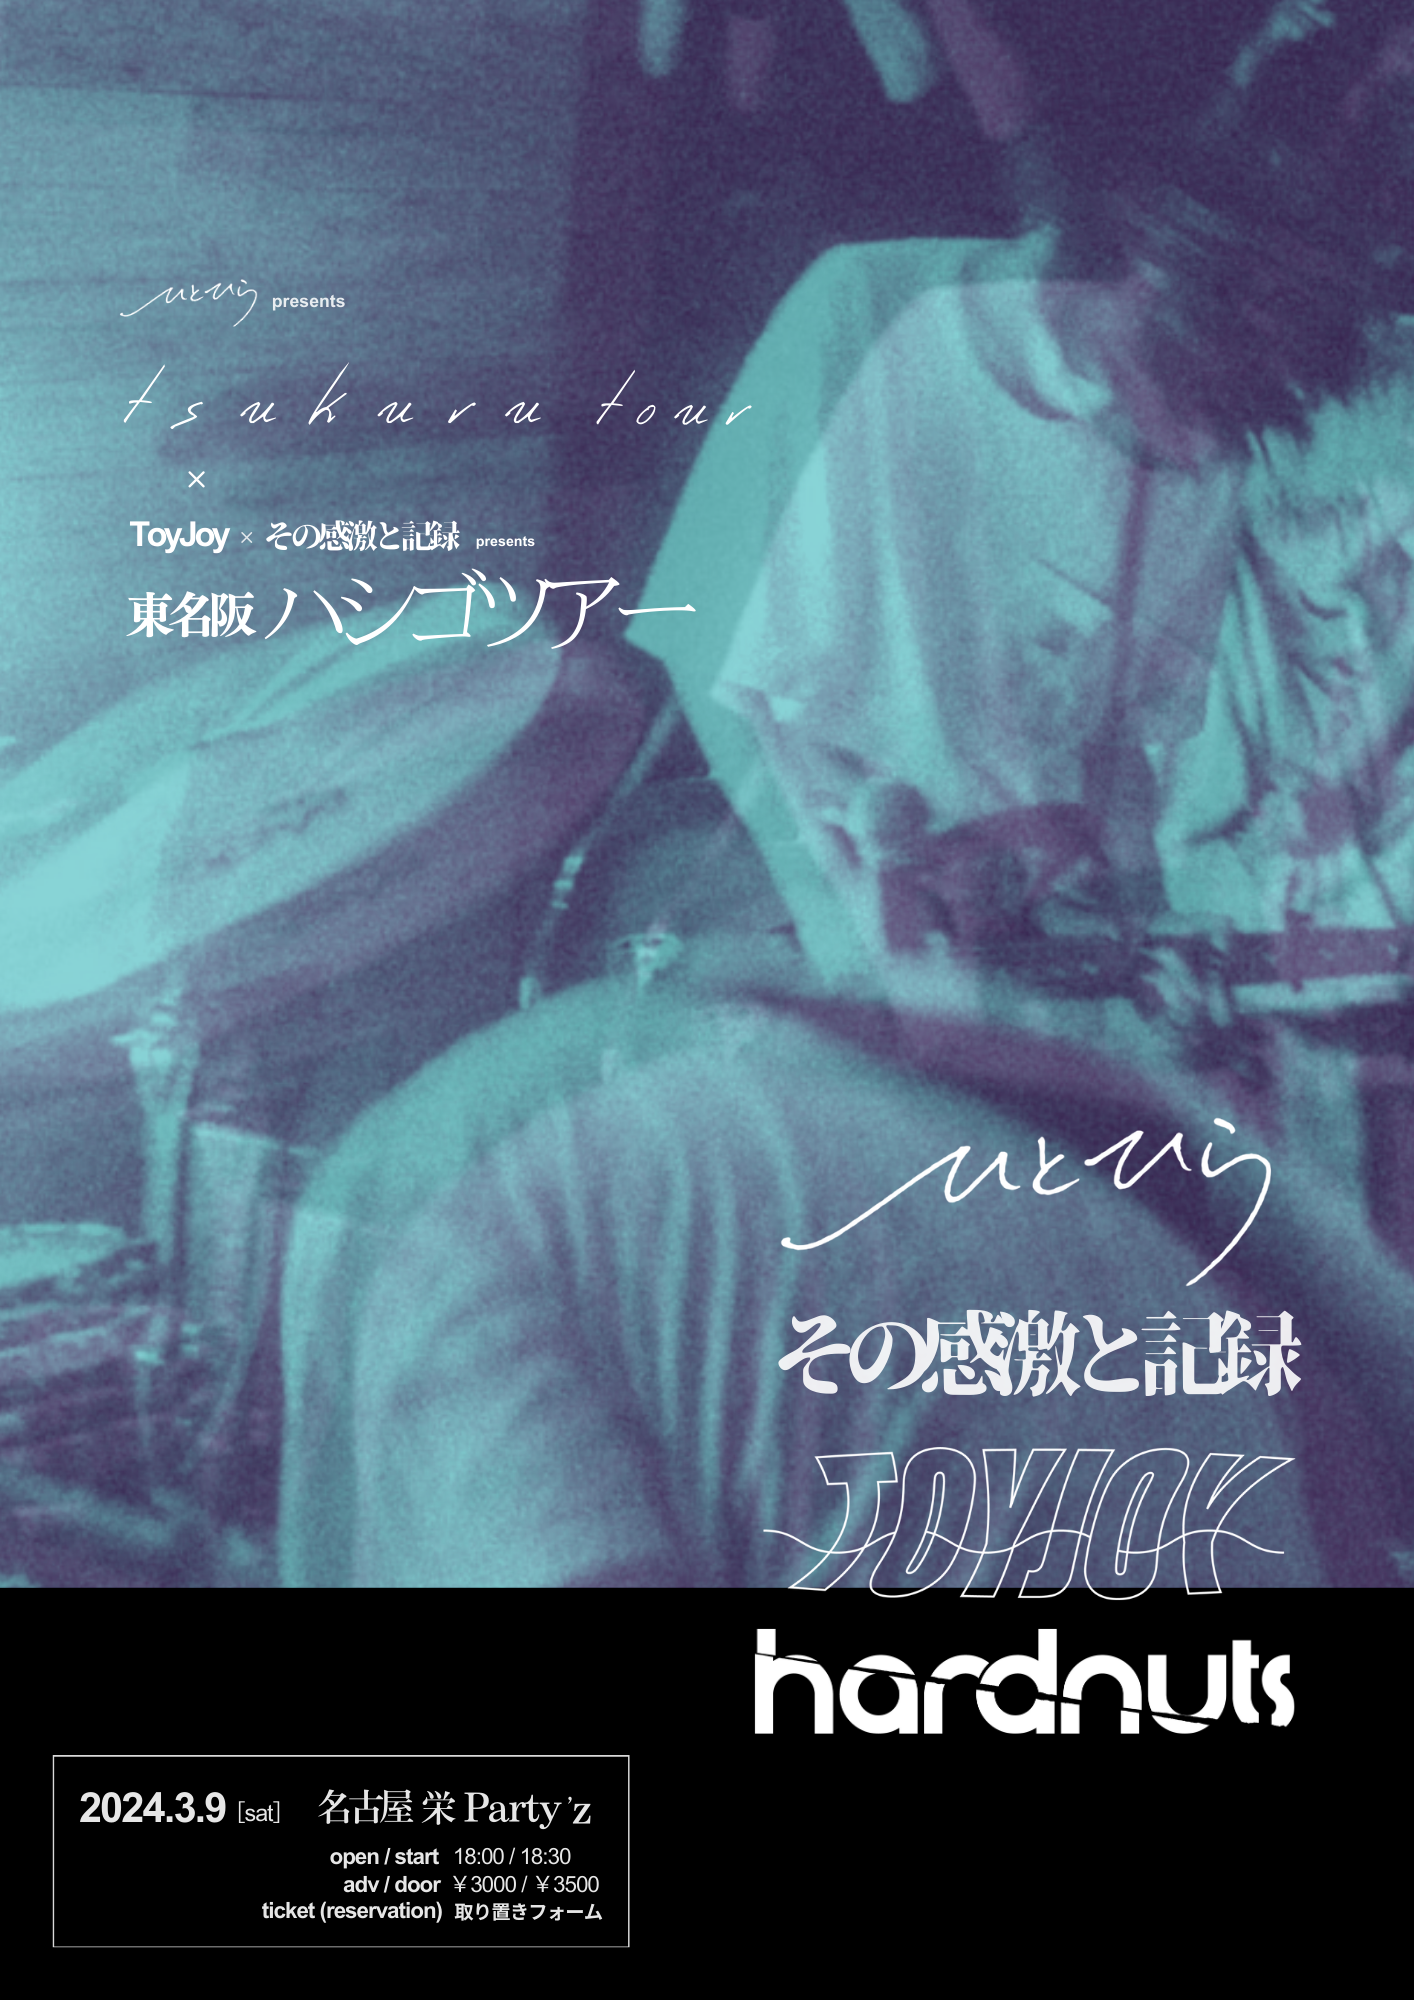 「つくる」Release Tour "tsukuru tour"名古屋編 × ToyJoy×その感激と記録 presents "東名阪ハシゴツアー" 名古屋編